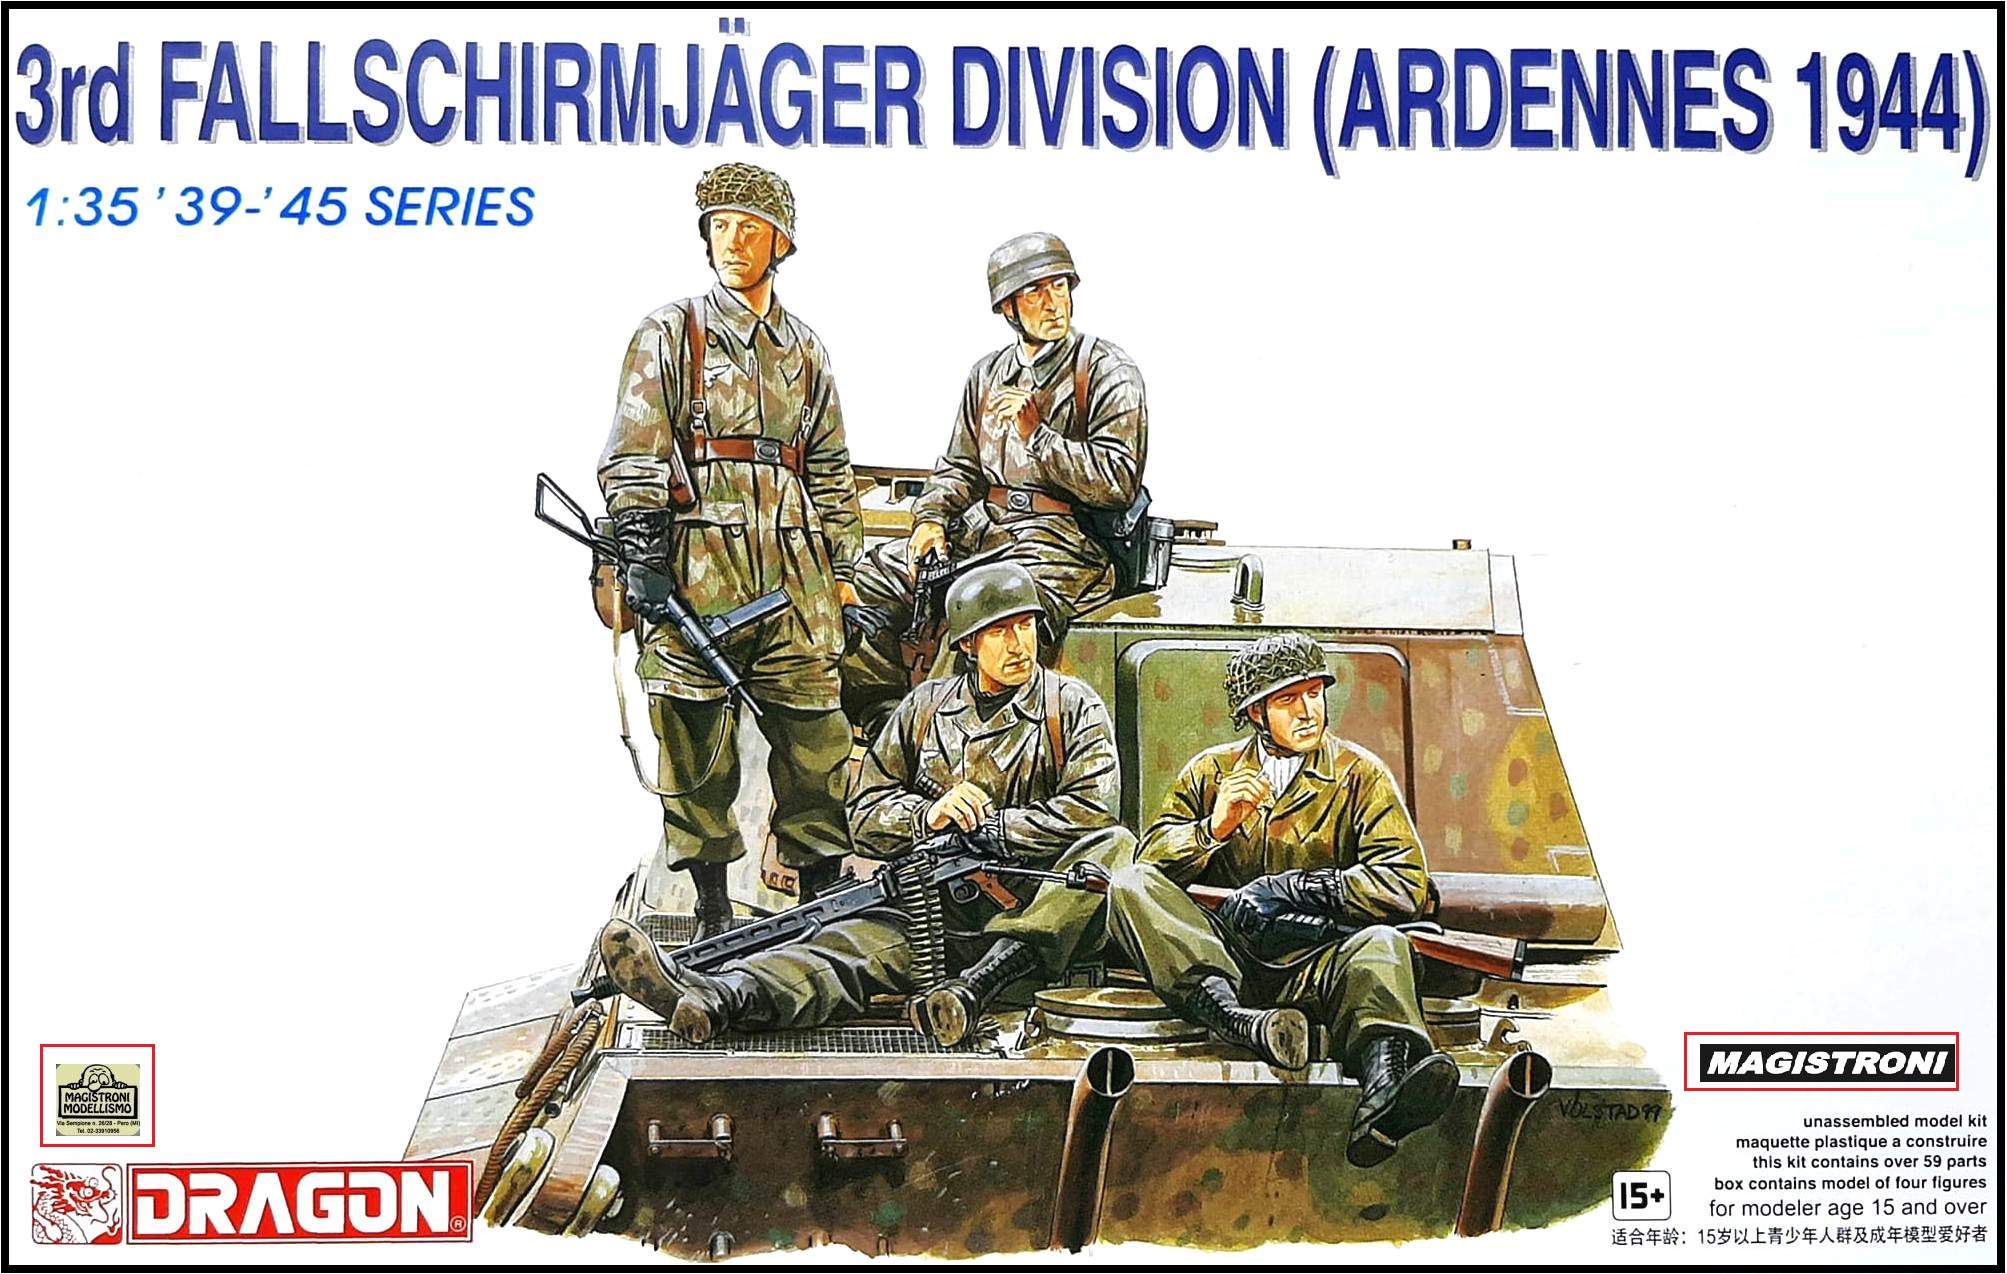 3rdFALLSCHIRMJAGER DIVISION (ARDENNE 1944)